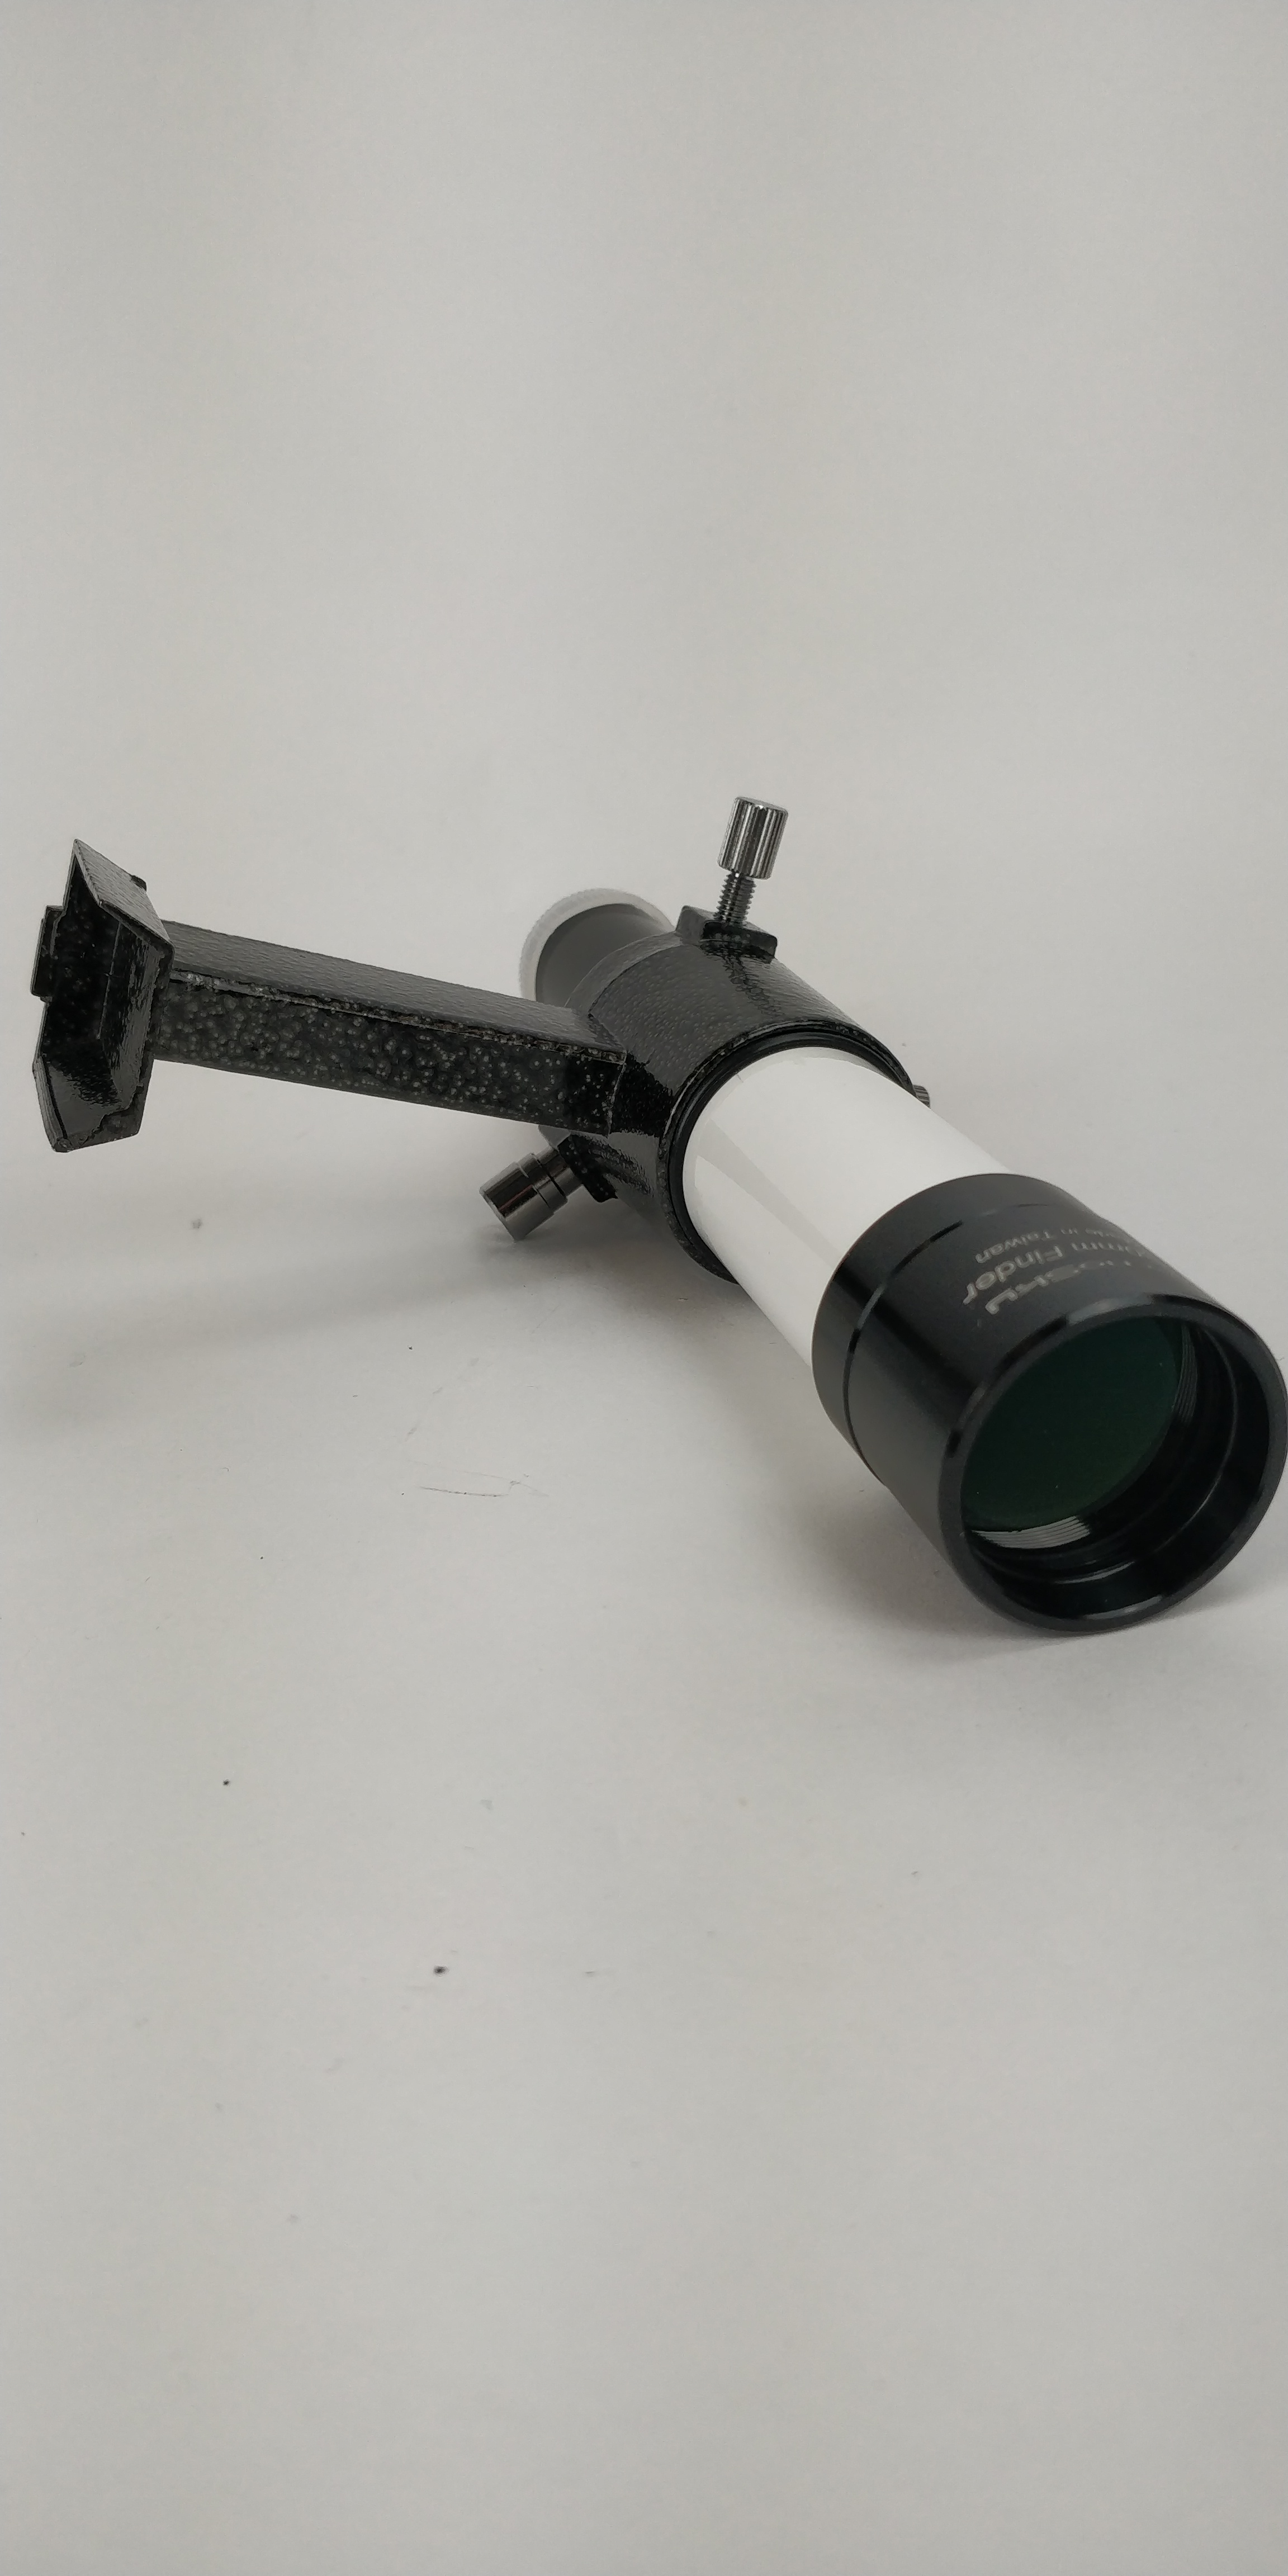  Cercatore TS Optics 6x30 - con supporto - bianco - visione dritta Usato in ottime condizioni 